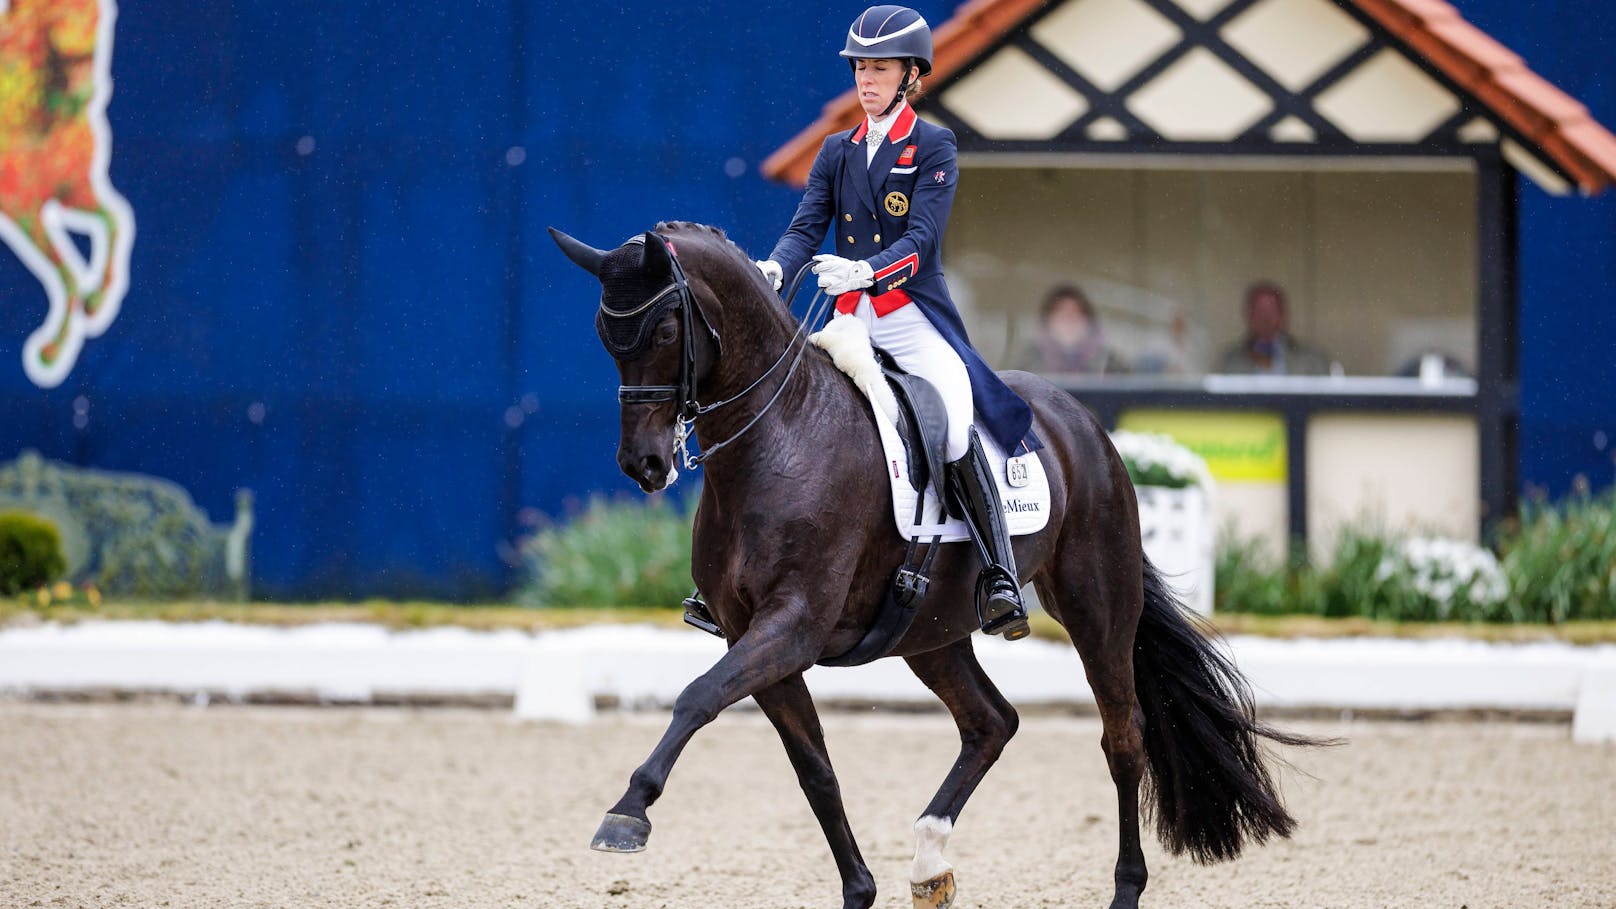 Dreifache Olympiasiegerin quält Pferd mit 24 Schlägen